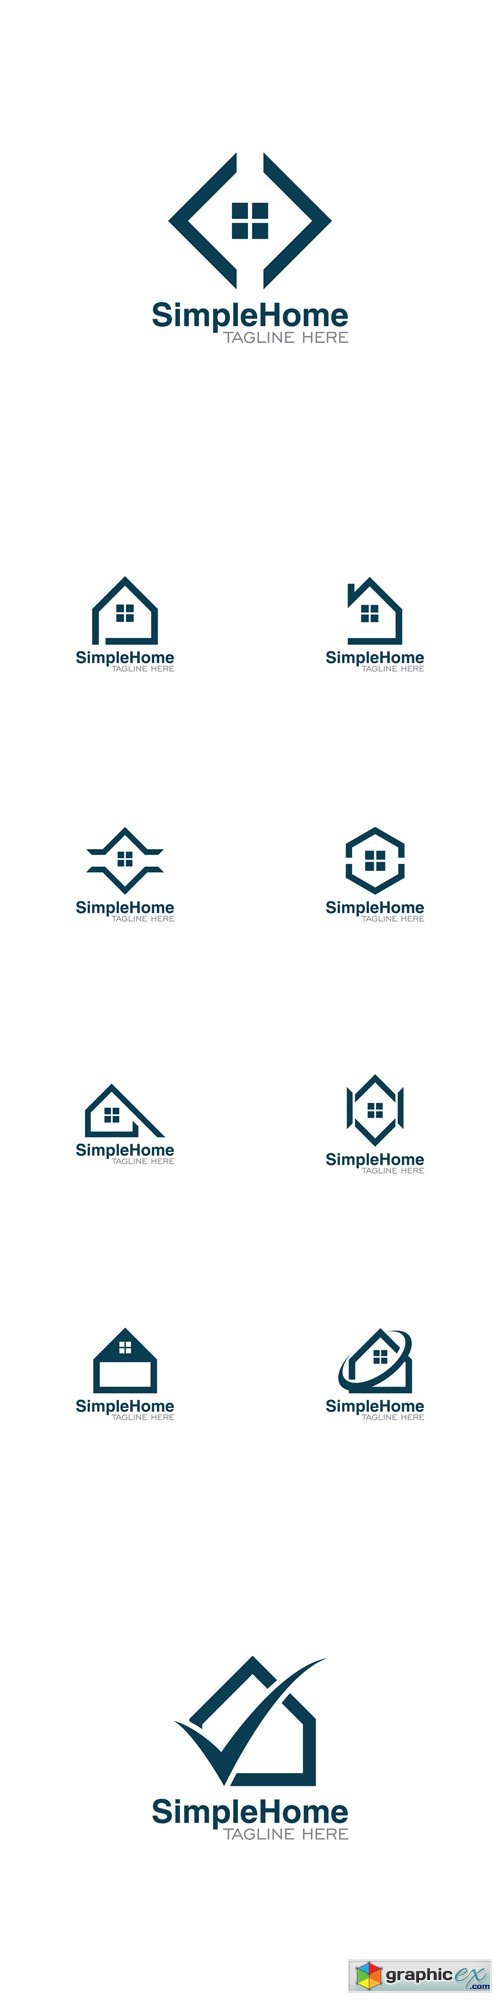 Simple Home Creative Concept Logo Design